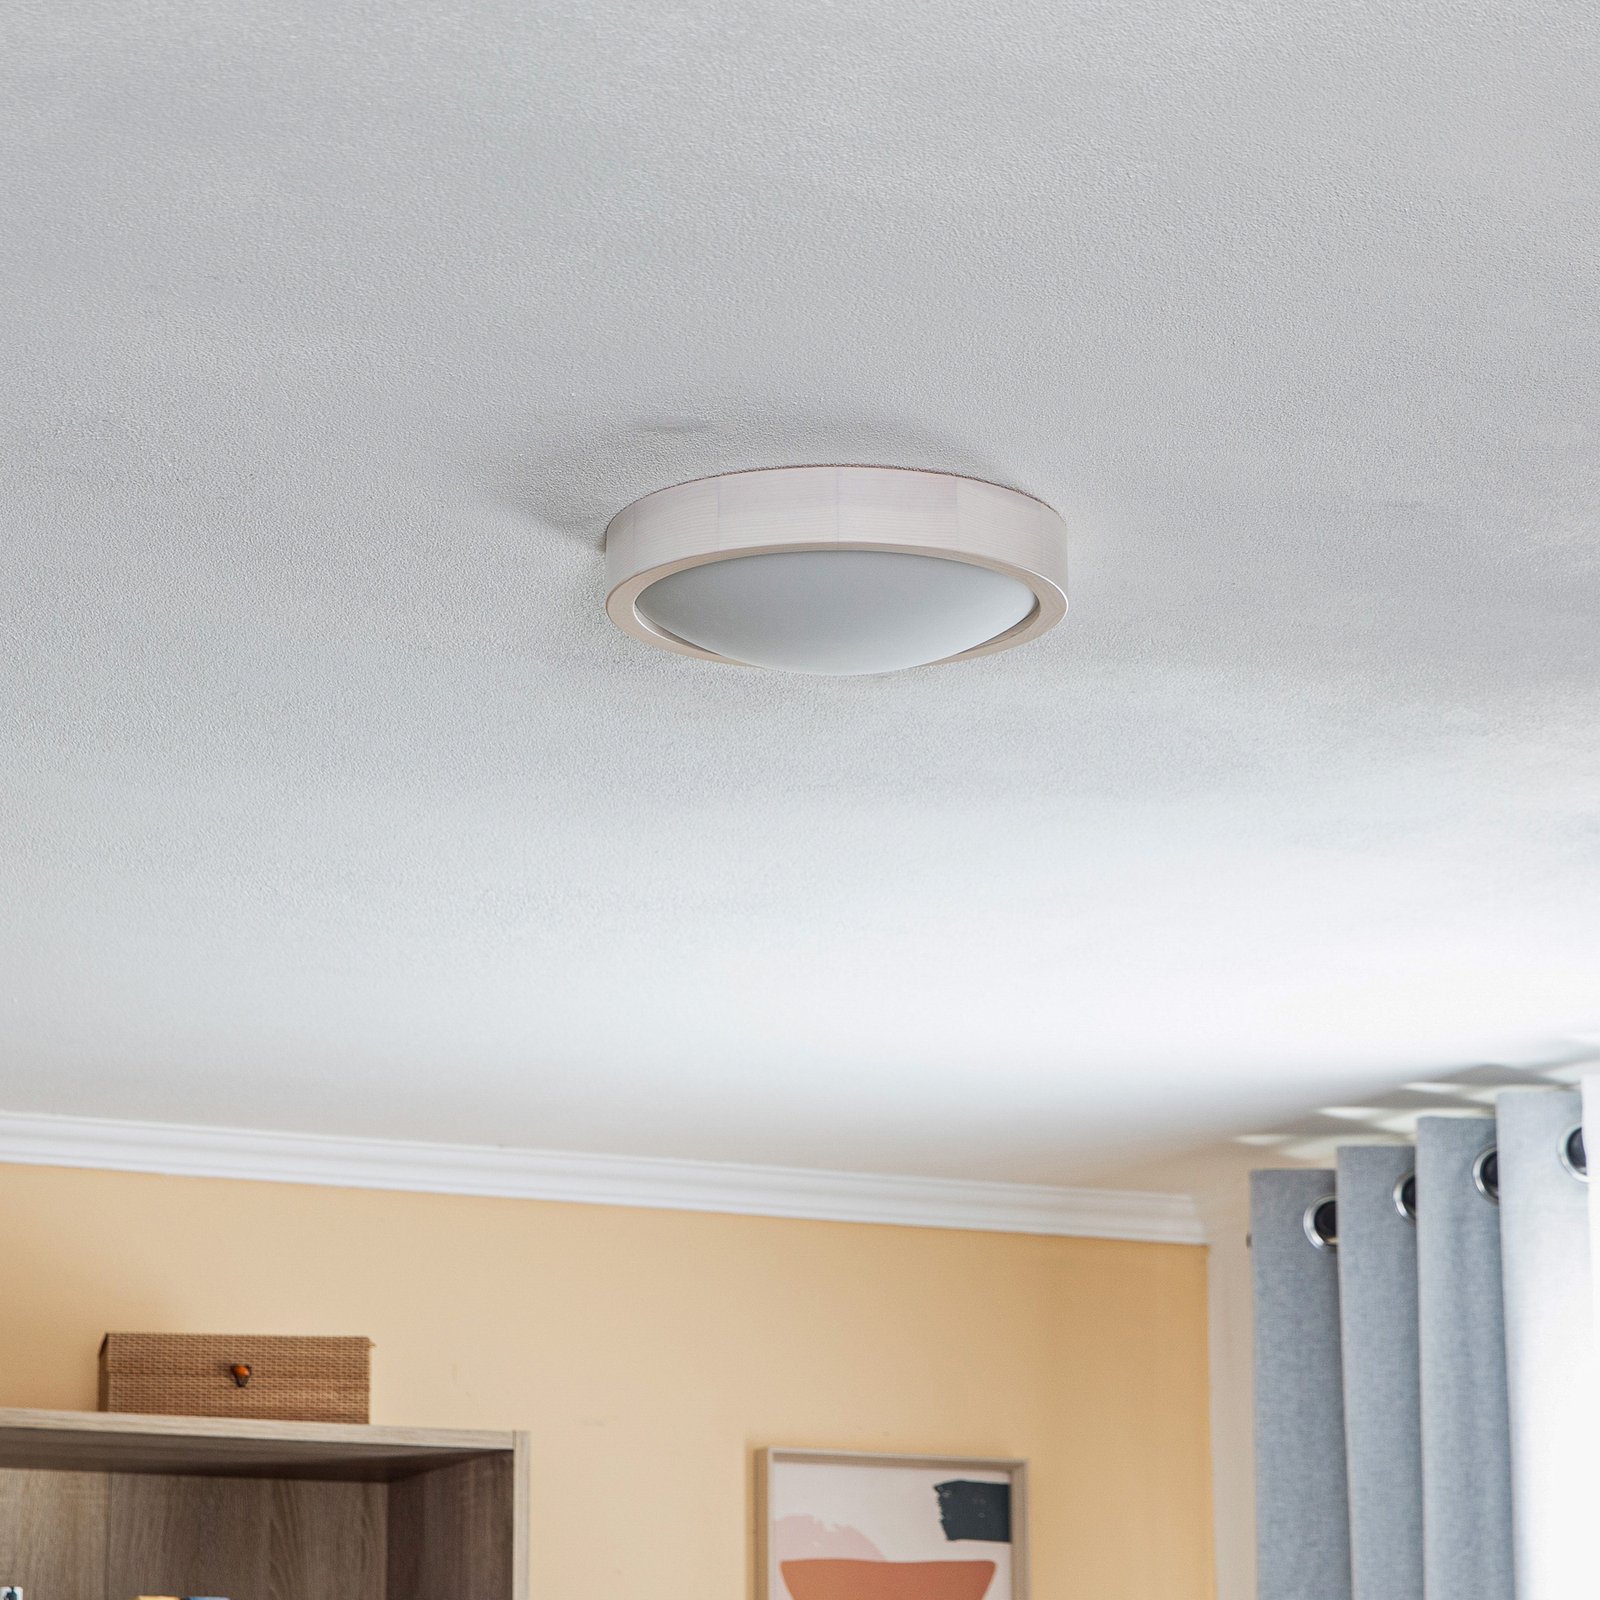 Envostar Kris ceiling light, Ø 27.5 cm, white